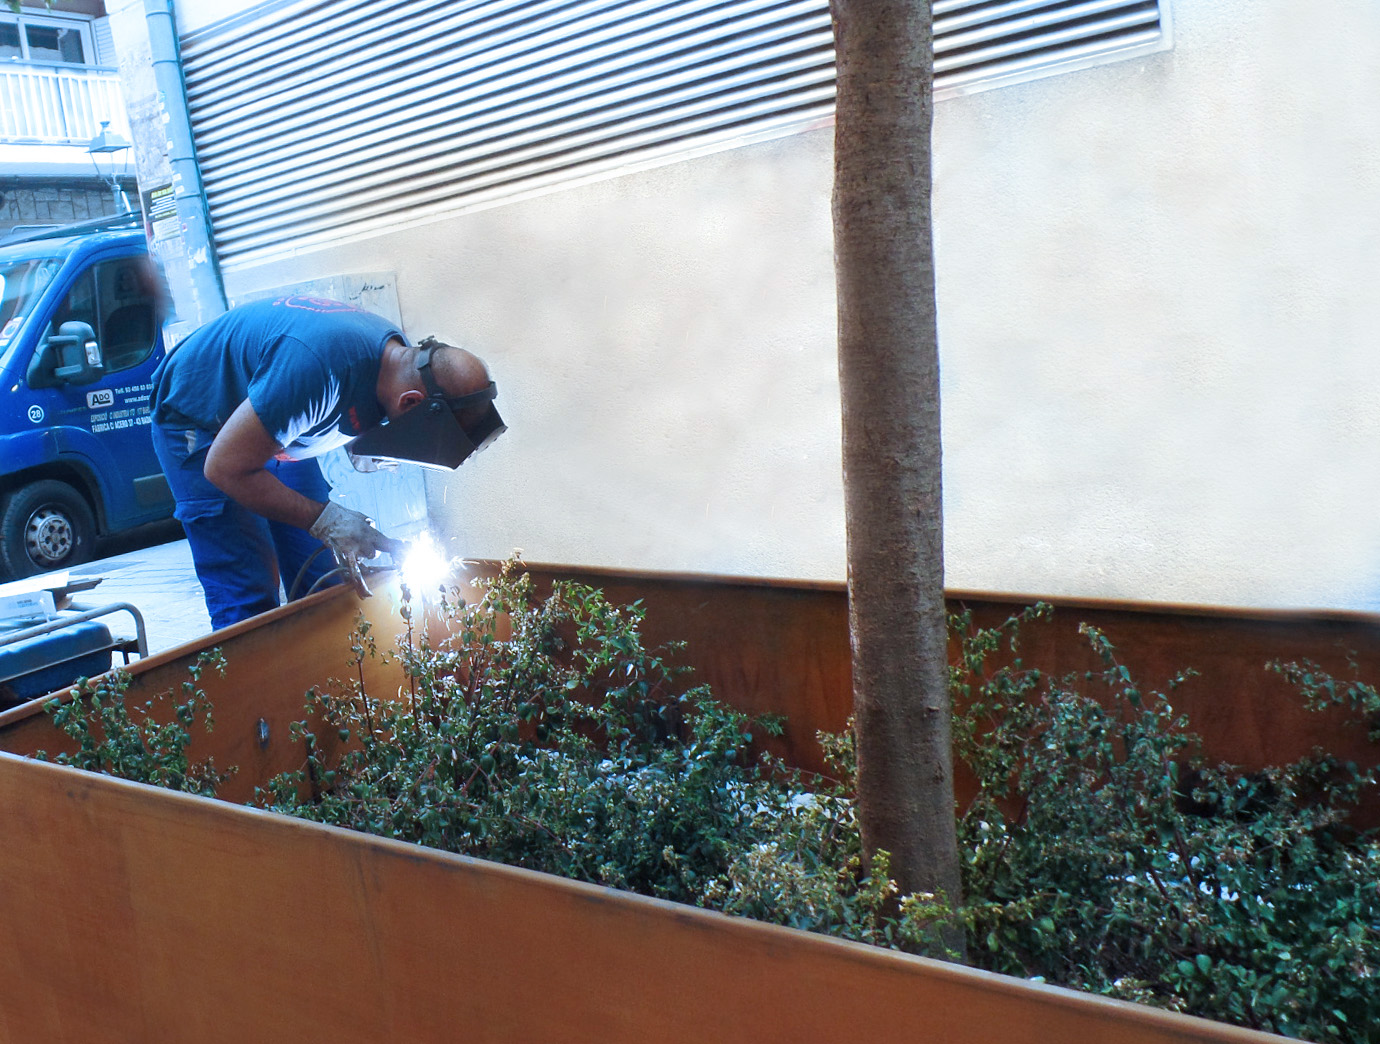 Instalación de jardineras a medida de acero Corten para mejorar la estética de las calles de Masnou